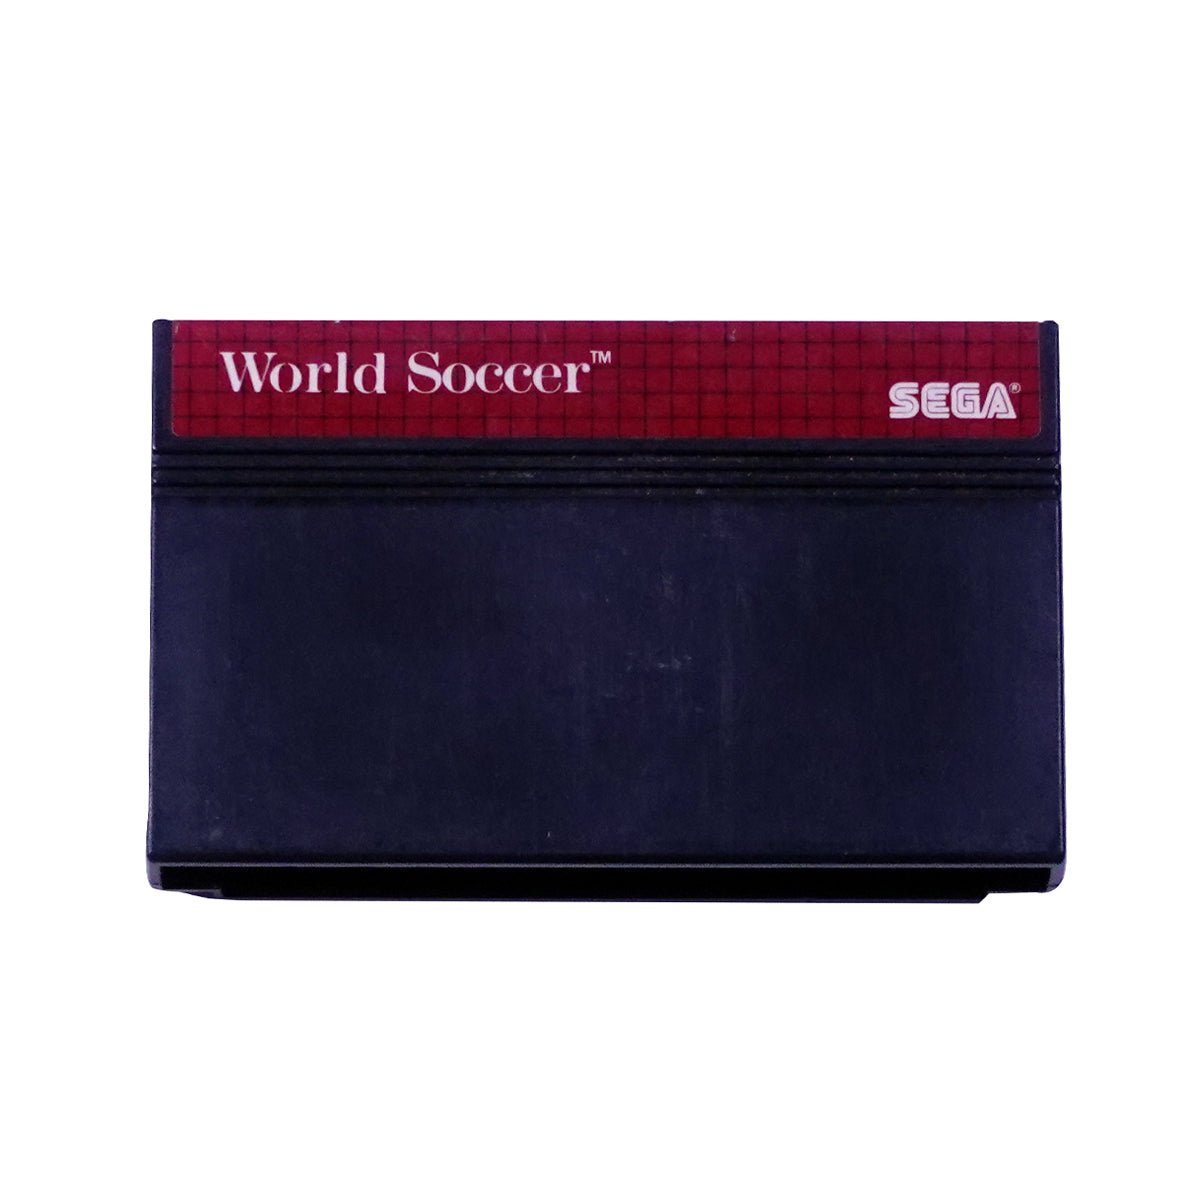 (Pre-Owned) World Soccer - Sega Master Game - ريترو - Store 974 | ستور ٩٧٤